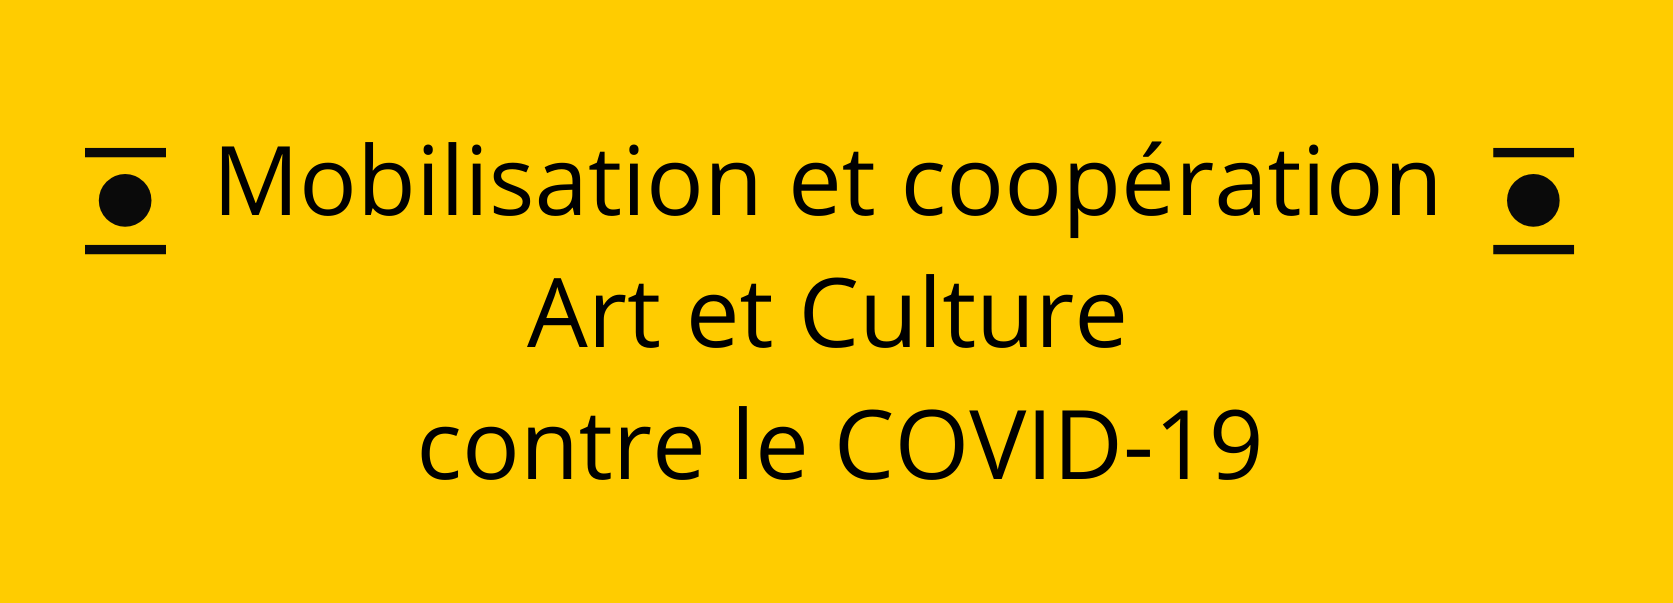 Mobilisation et coopération Art et Culture contre le COVID-19